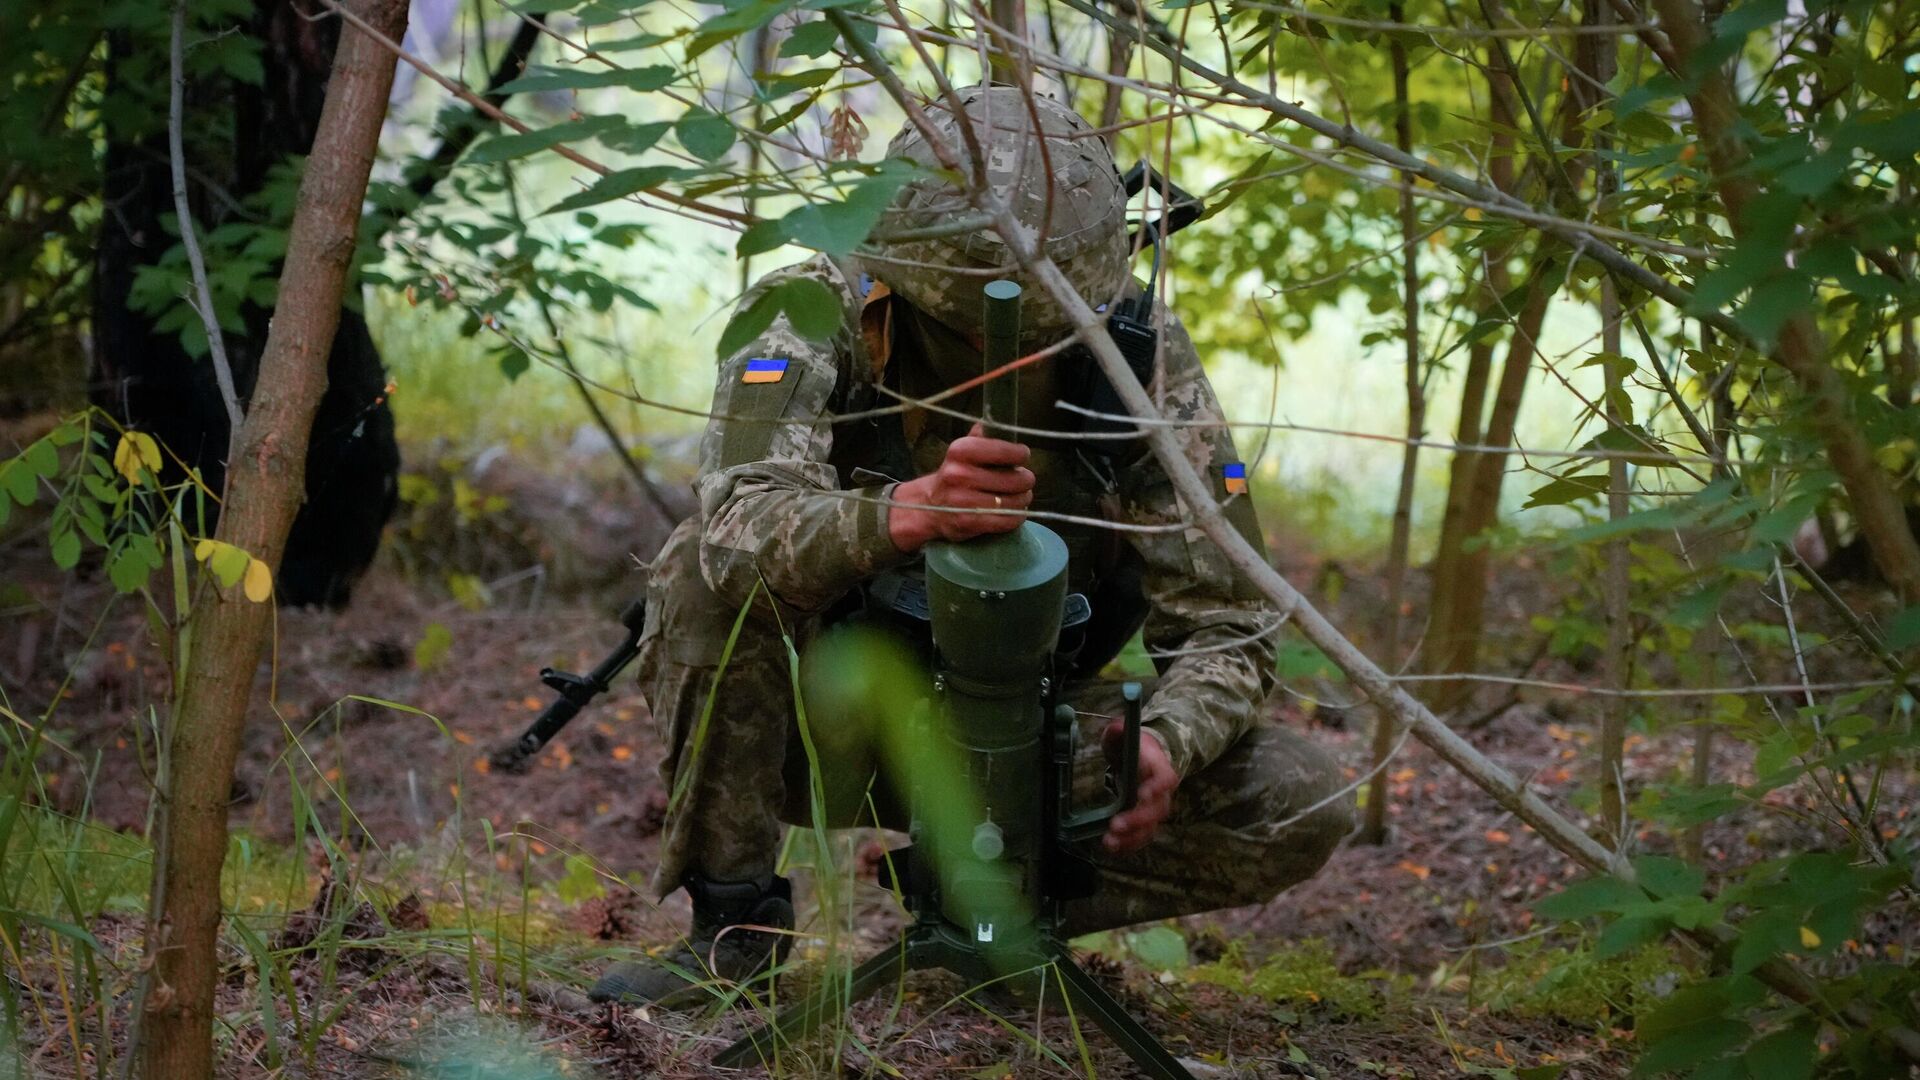 Солдат спецподразделения Украины устанавливает немецкую противотанковую мину направленного действия DM22 в Донецкой области - РИА Новости, 1920, 18.08.2022